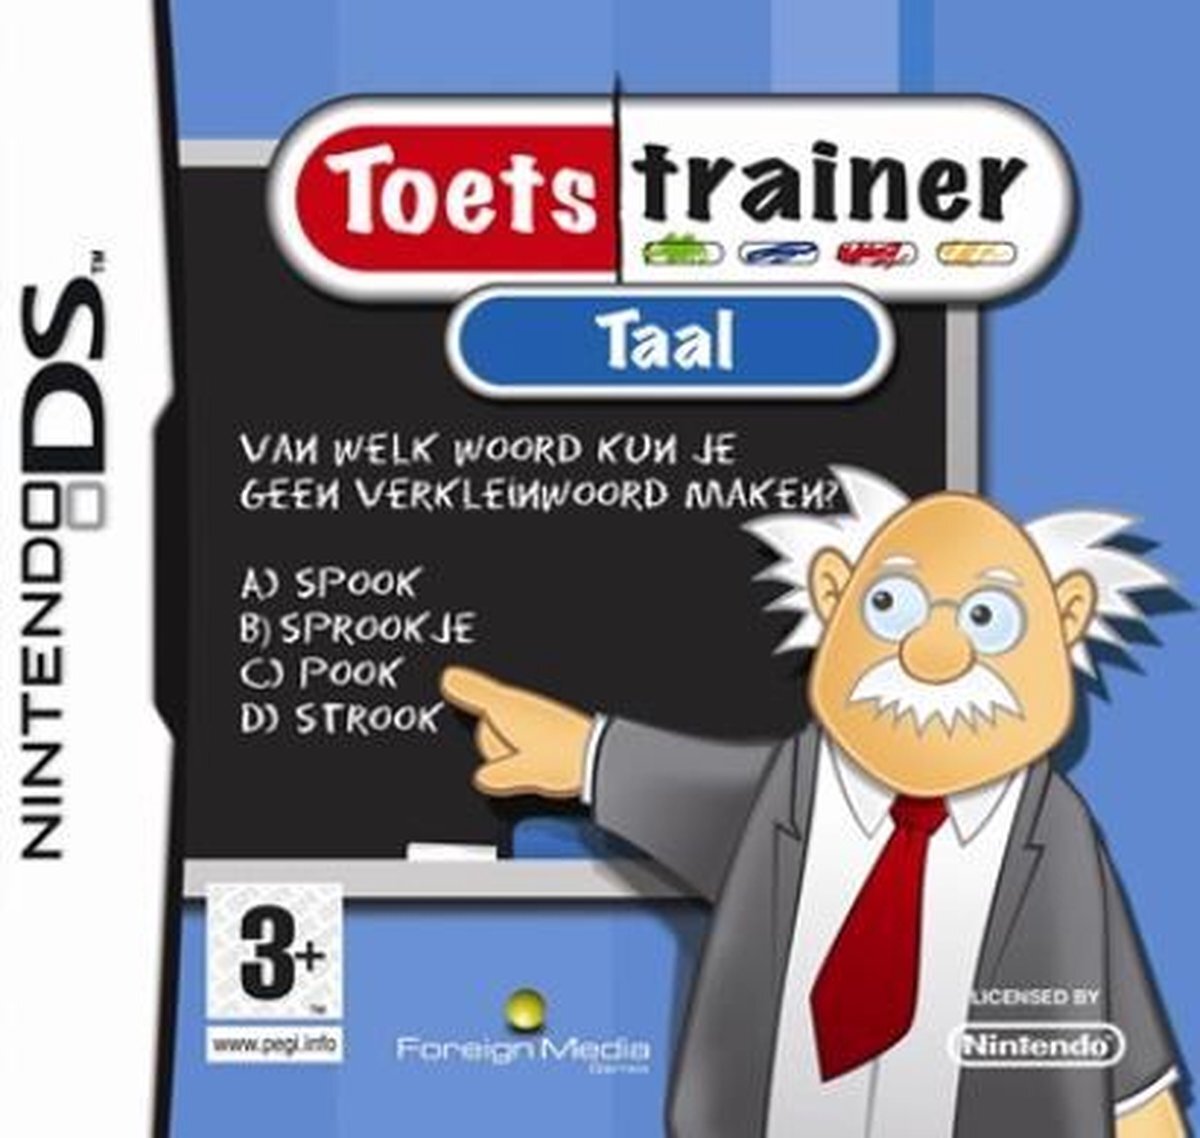 - Toetstrainer Taal Nintendo DS